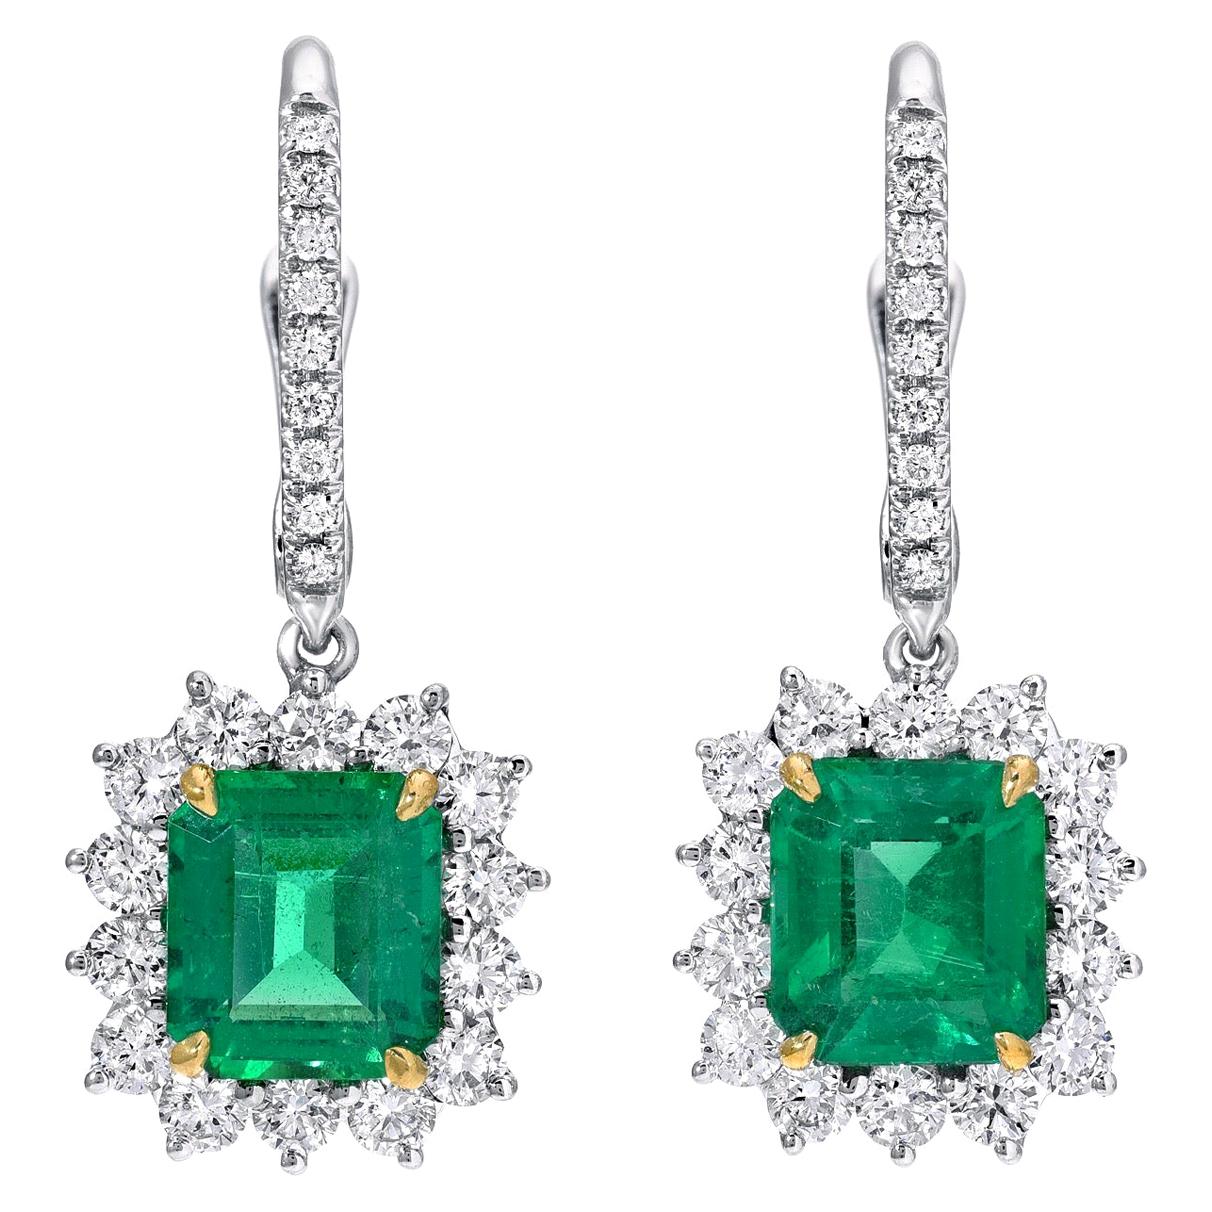 Emerald Earrings Emerald Cut 2.68 Carats 